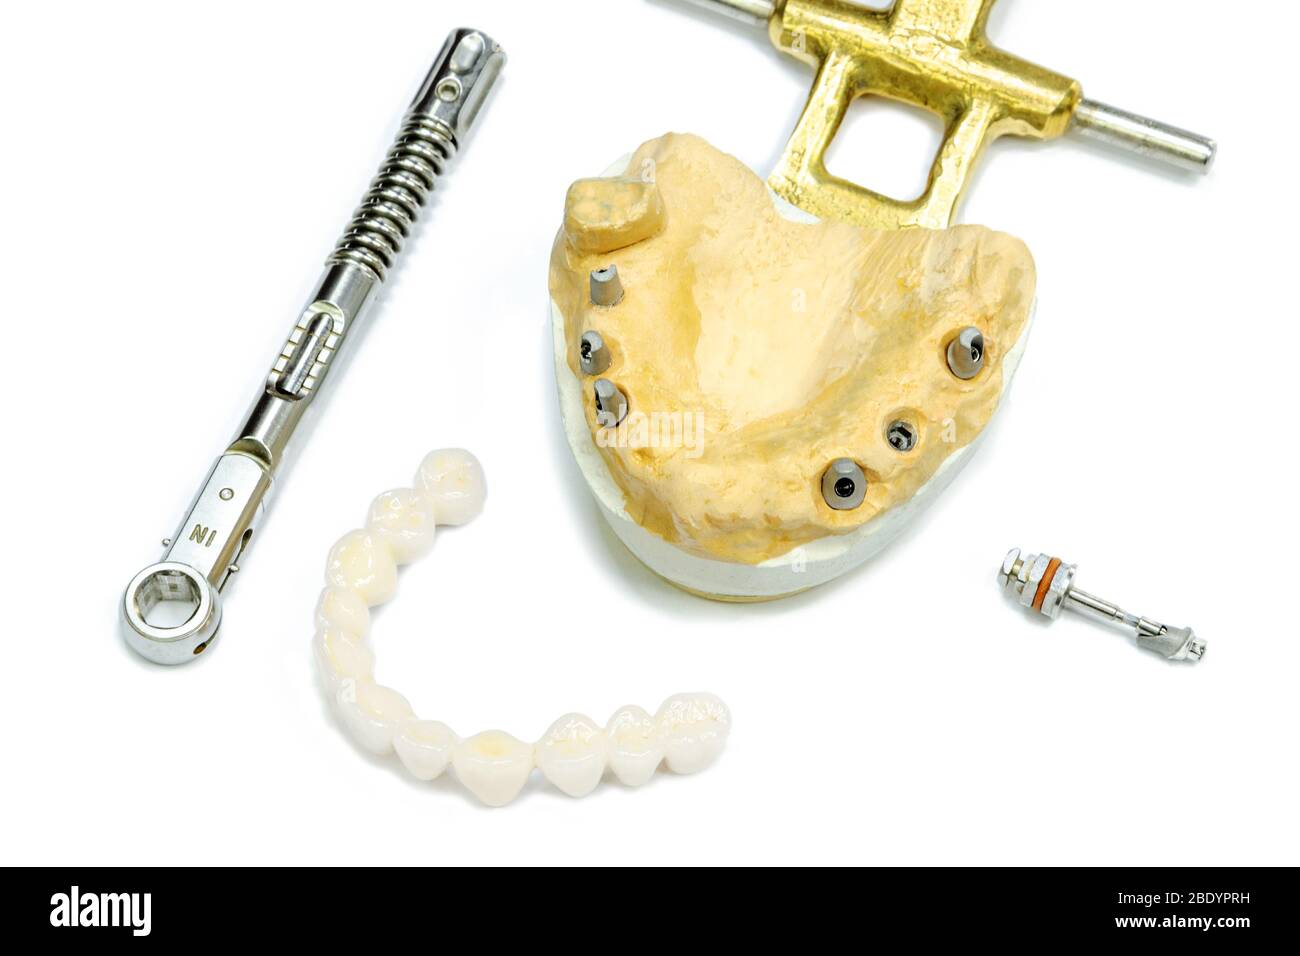 Weiße keramische Zähne mit Zahnimplantaten auf weißem Hintergrund. Drehmomentschlüssel und Schraubendreher. Konzept der dentalen Implantation und orthopädische de Stockfoto